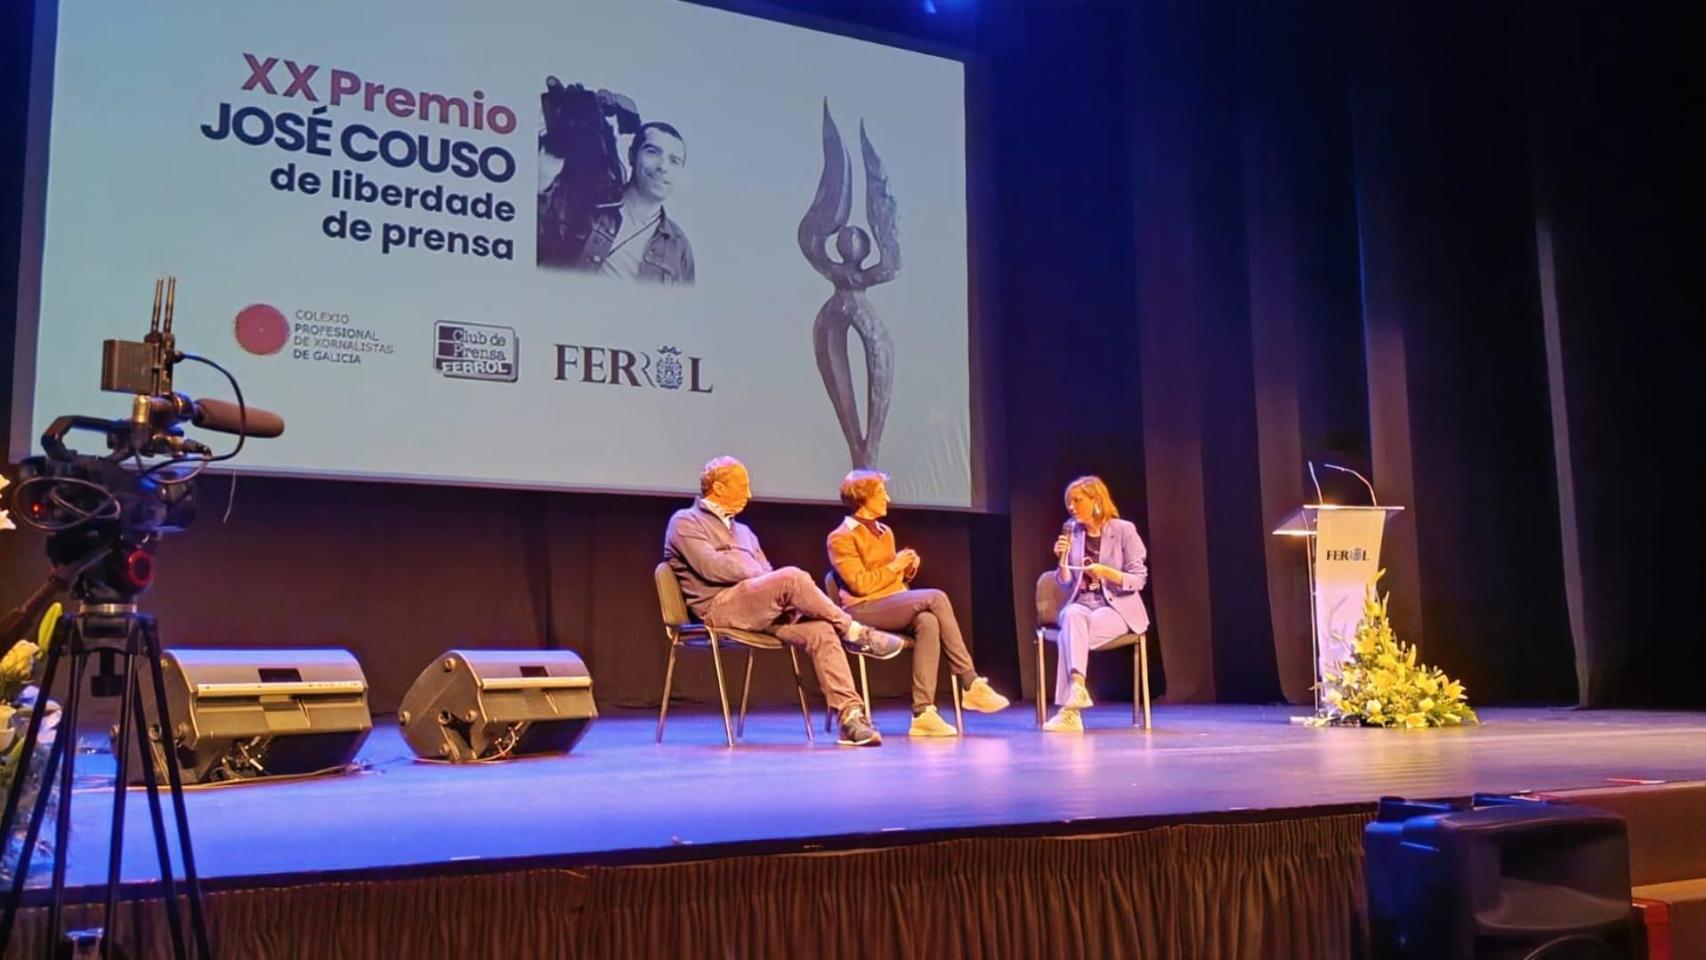 XX Premio José Couso de Libertad de Prensa